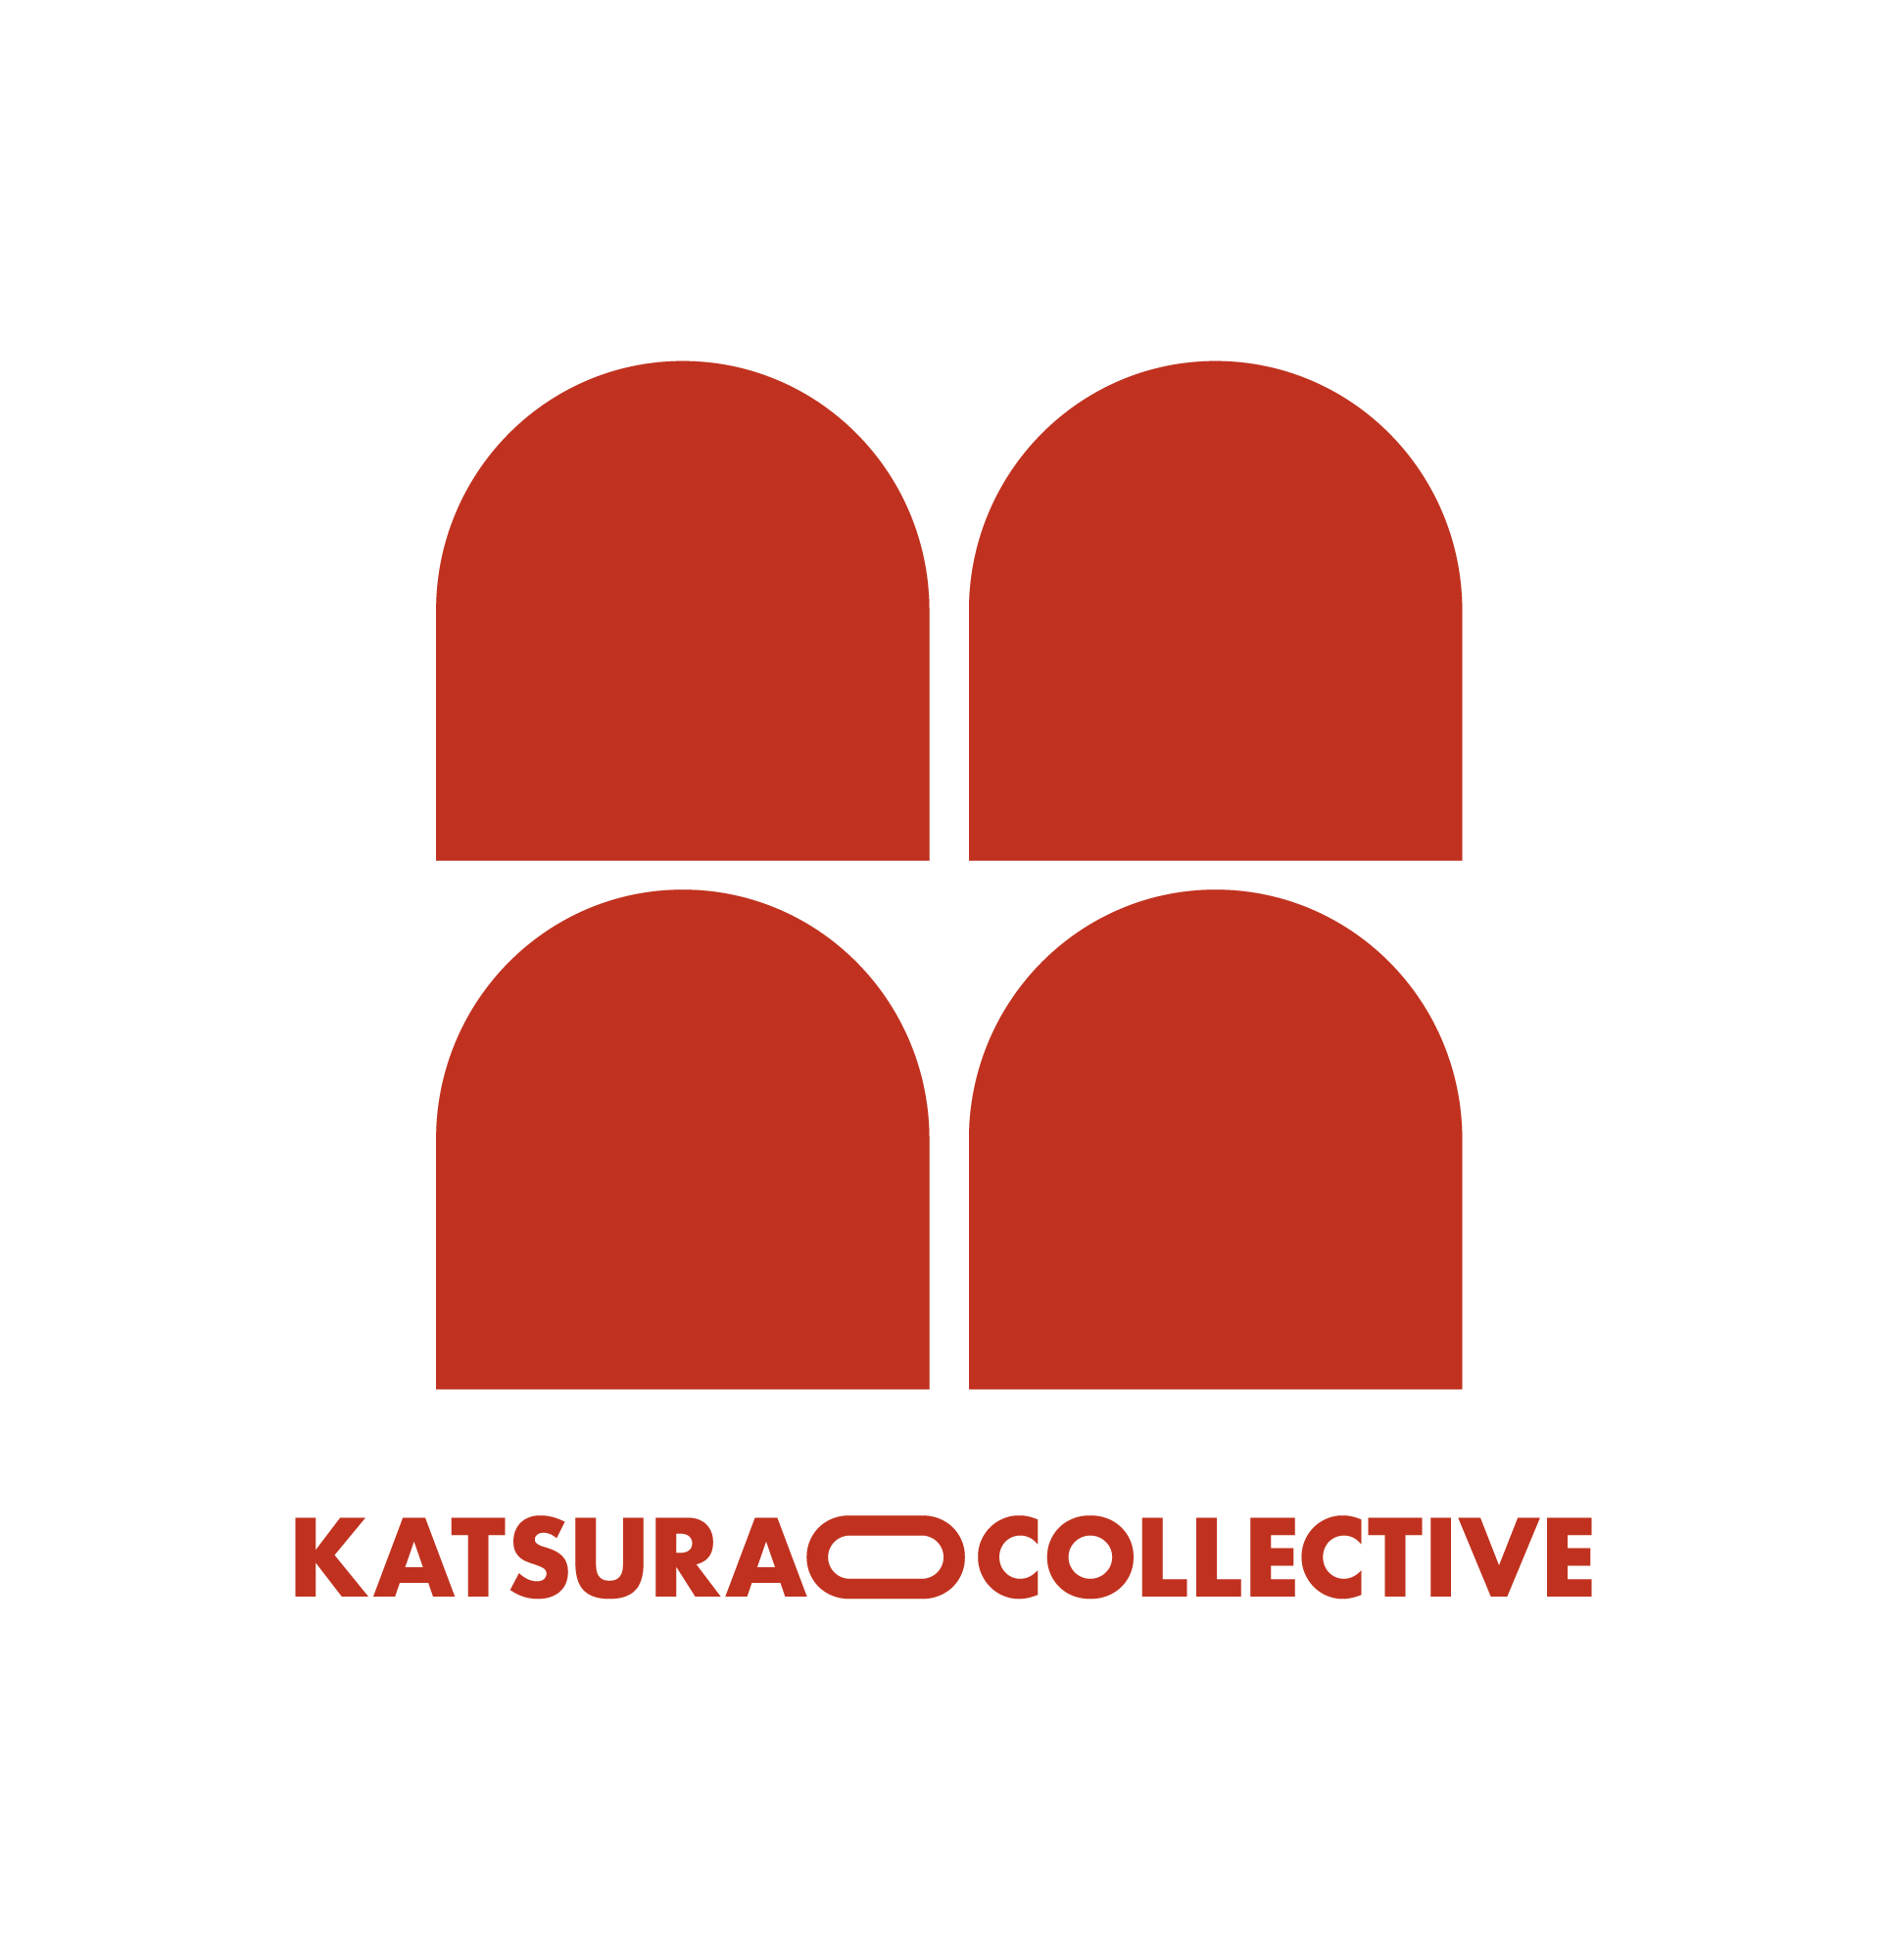 Katsurao Collective